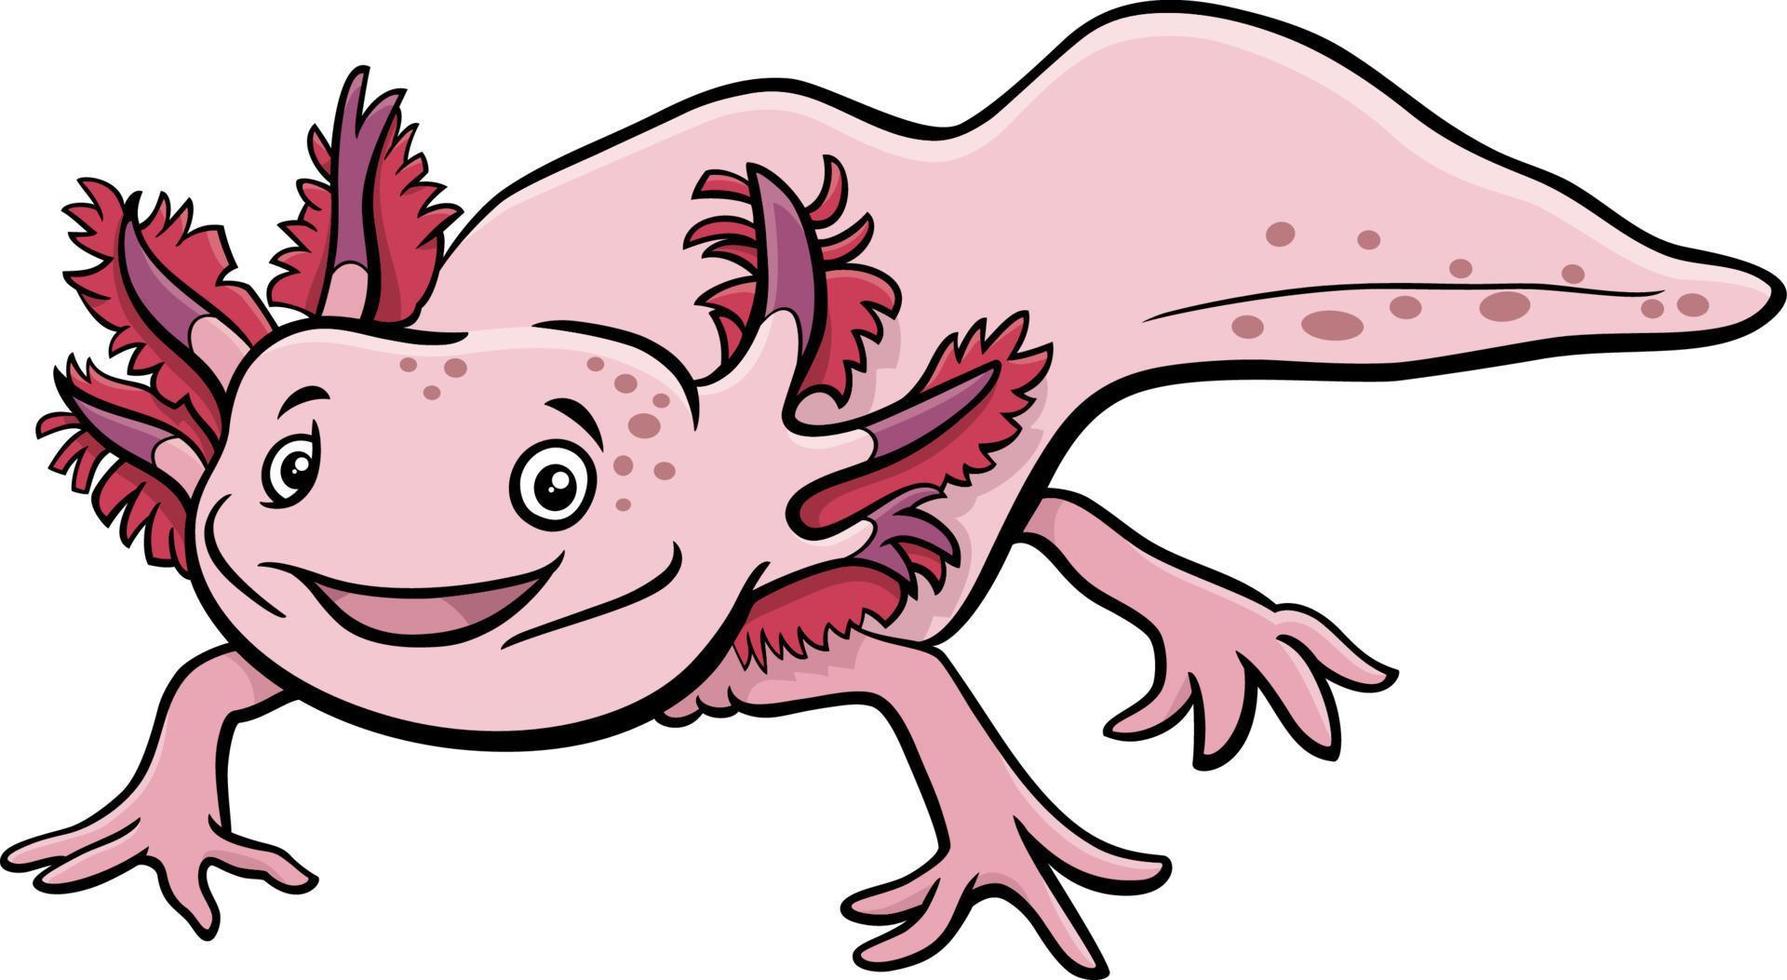 personnage d'animal aquatique axolotl de dessin animé vecteur